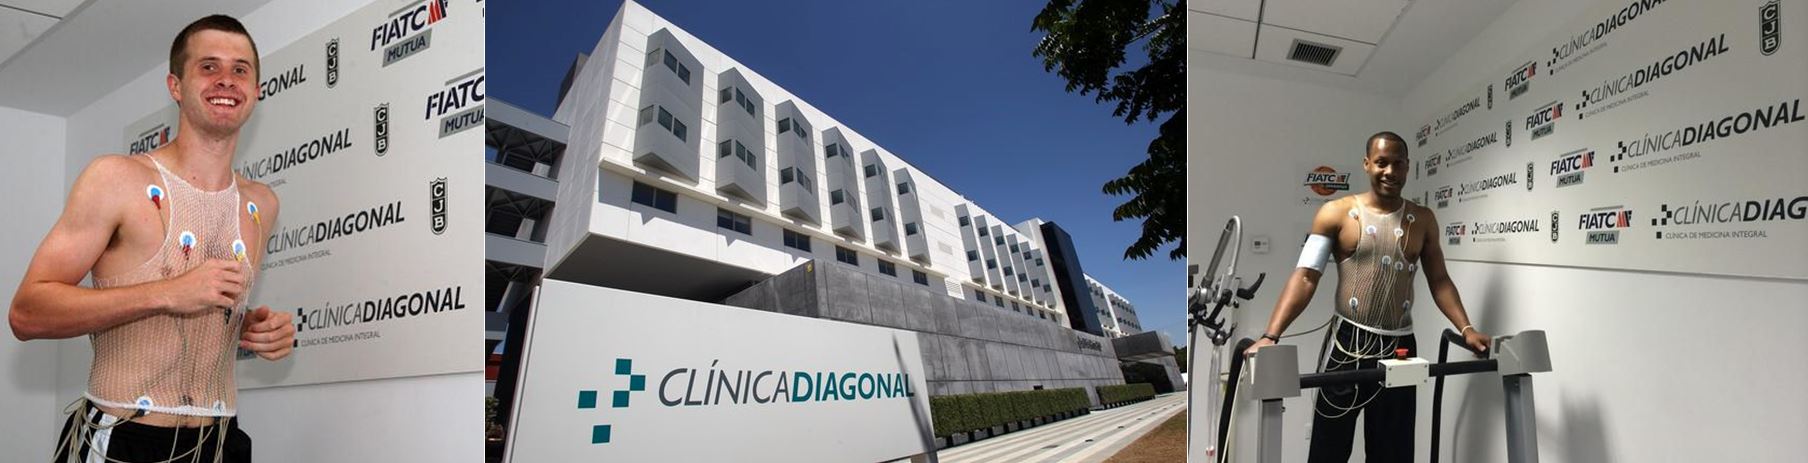 Clinique Diagonal - Barcelone Espagne - spécialistes en médecine du sport